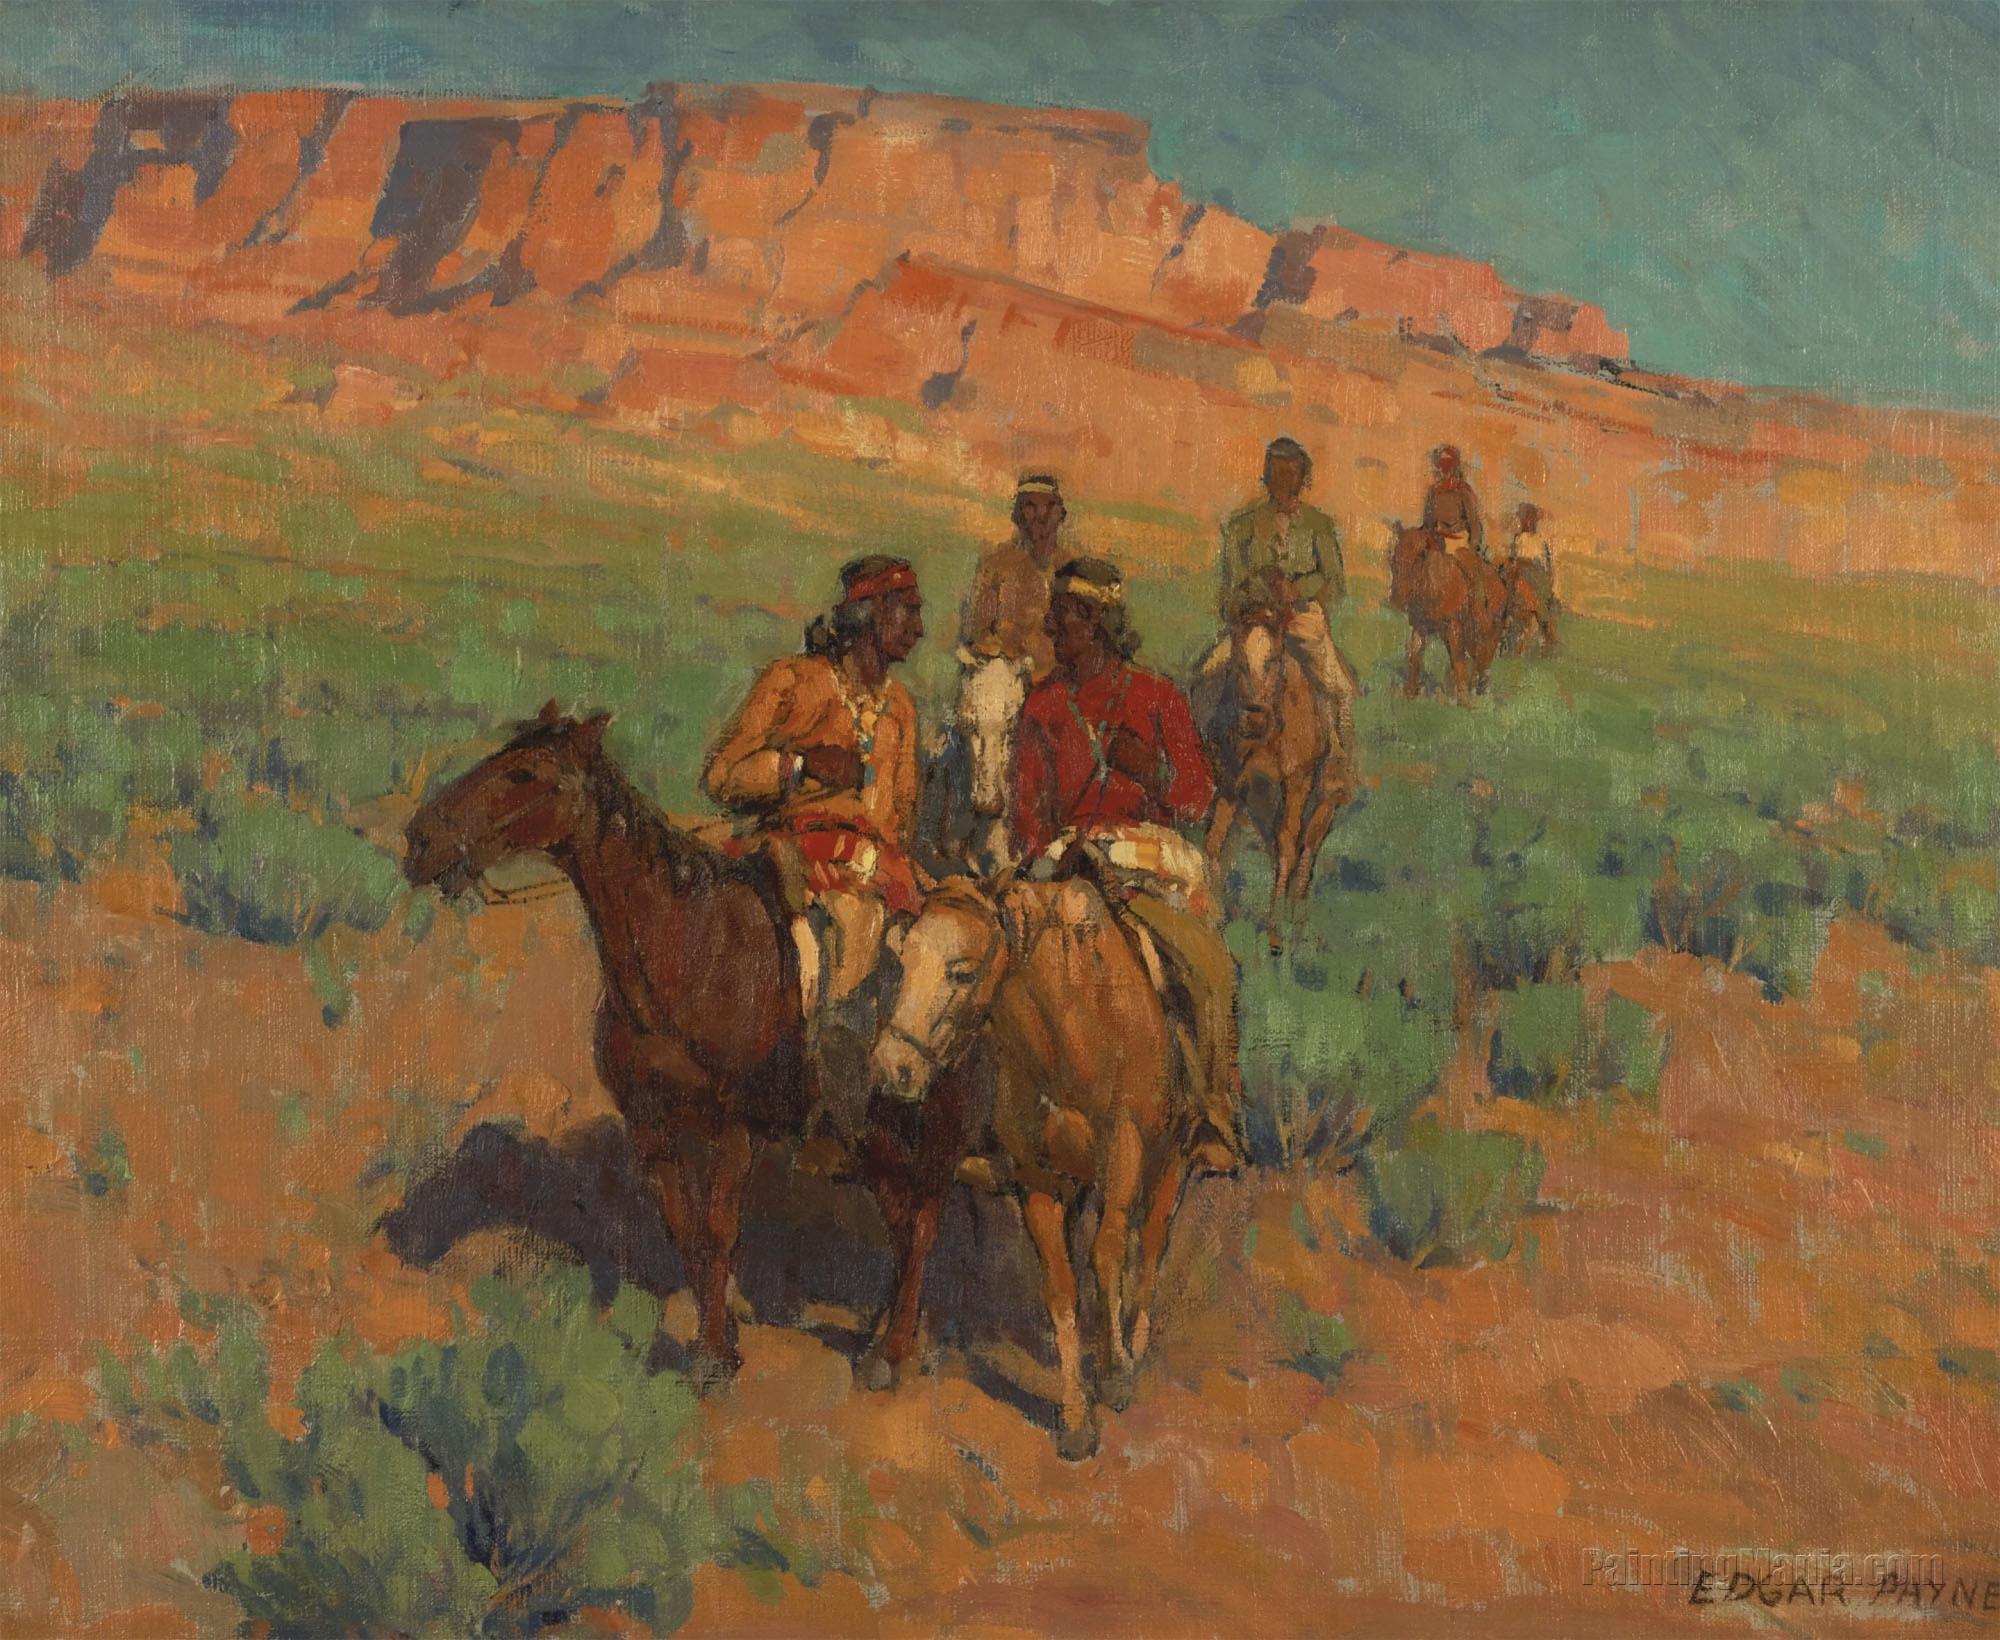 Navajos on Horseback